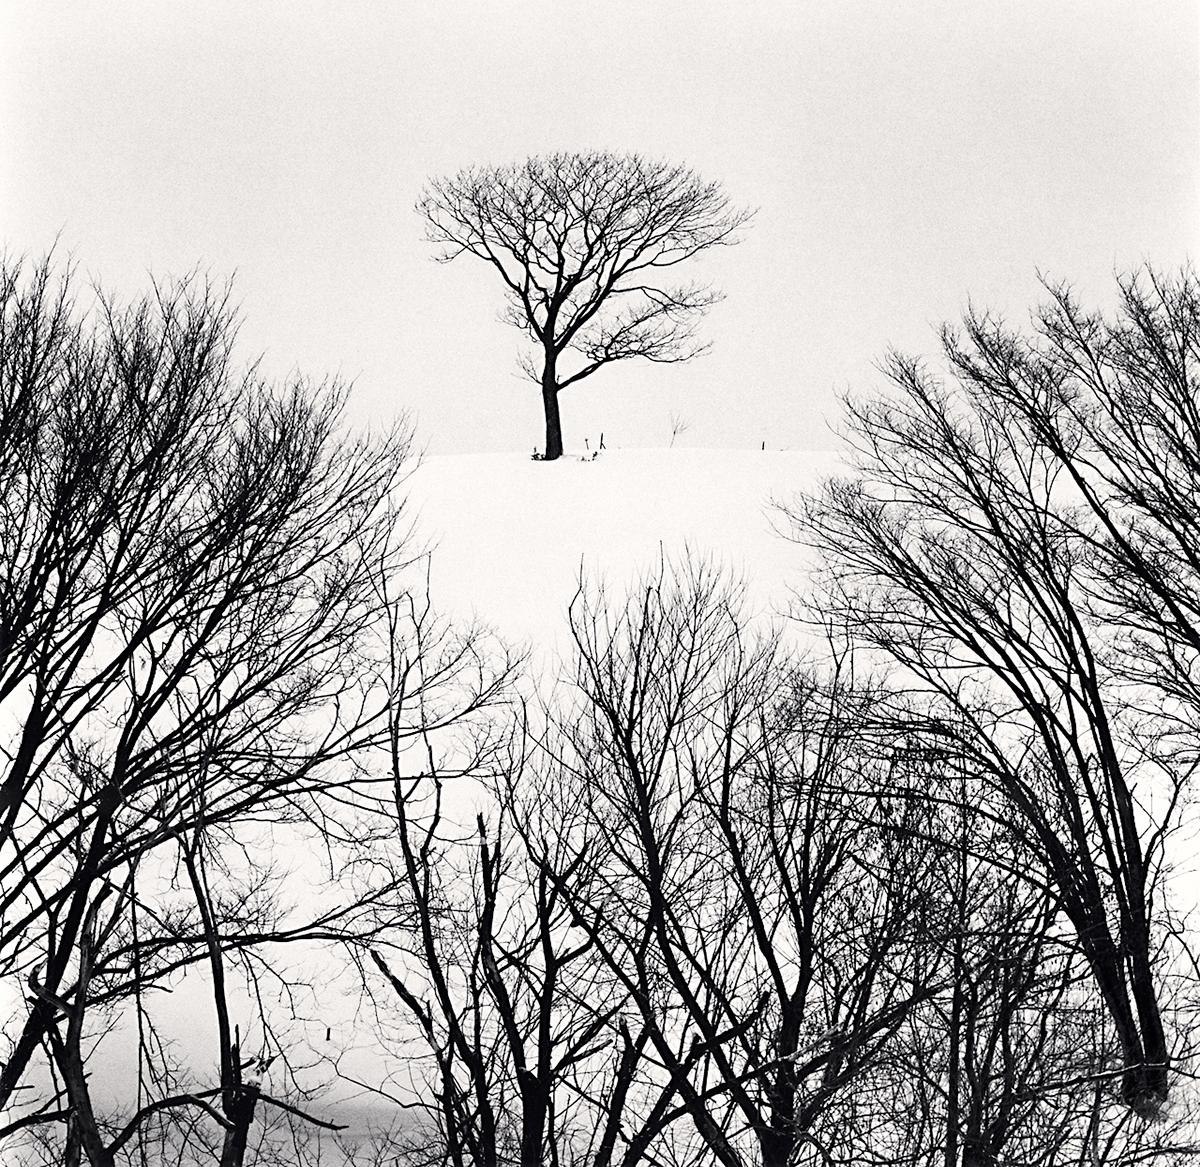 Hurep Hill Trees, Esashi, Hokkaido, Japan von Michael Kenna ist ein 8 x 8 inch* Silbergelatineabzug, erhältlich in einer Auflage von 25 Stück.
*Bitte beachten Sie: Die Maße dieses Drucks sind ungefähre Angaben.
Diese Fotografie ist von Michael Kenna